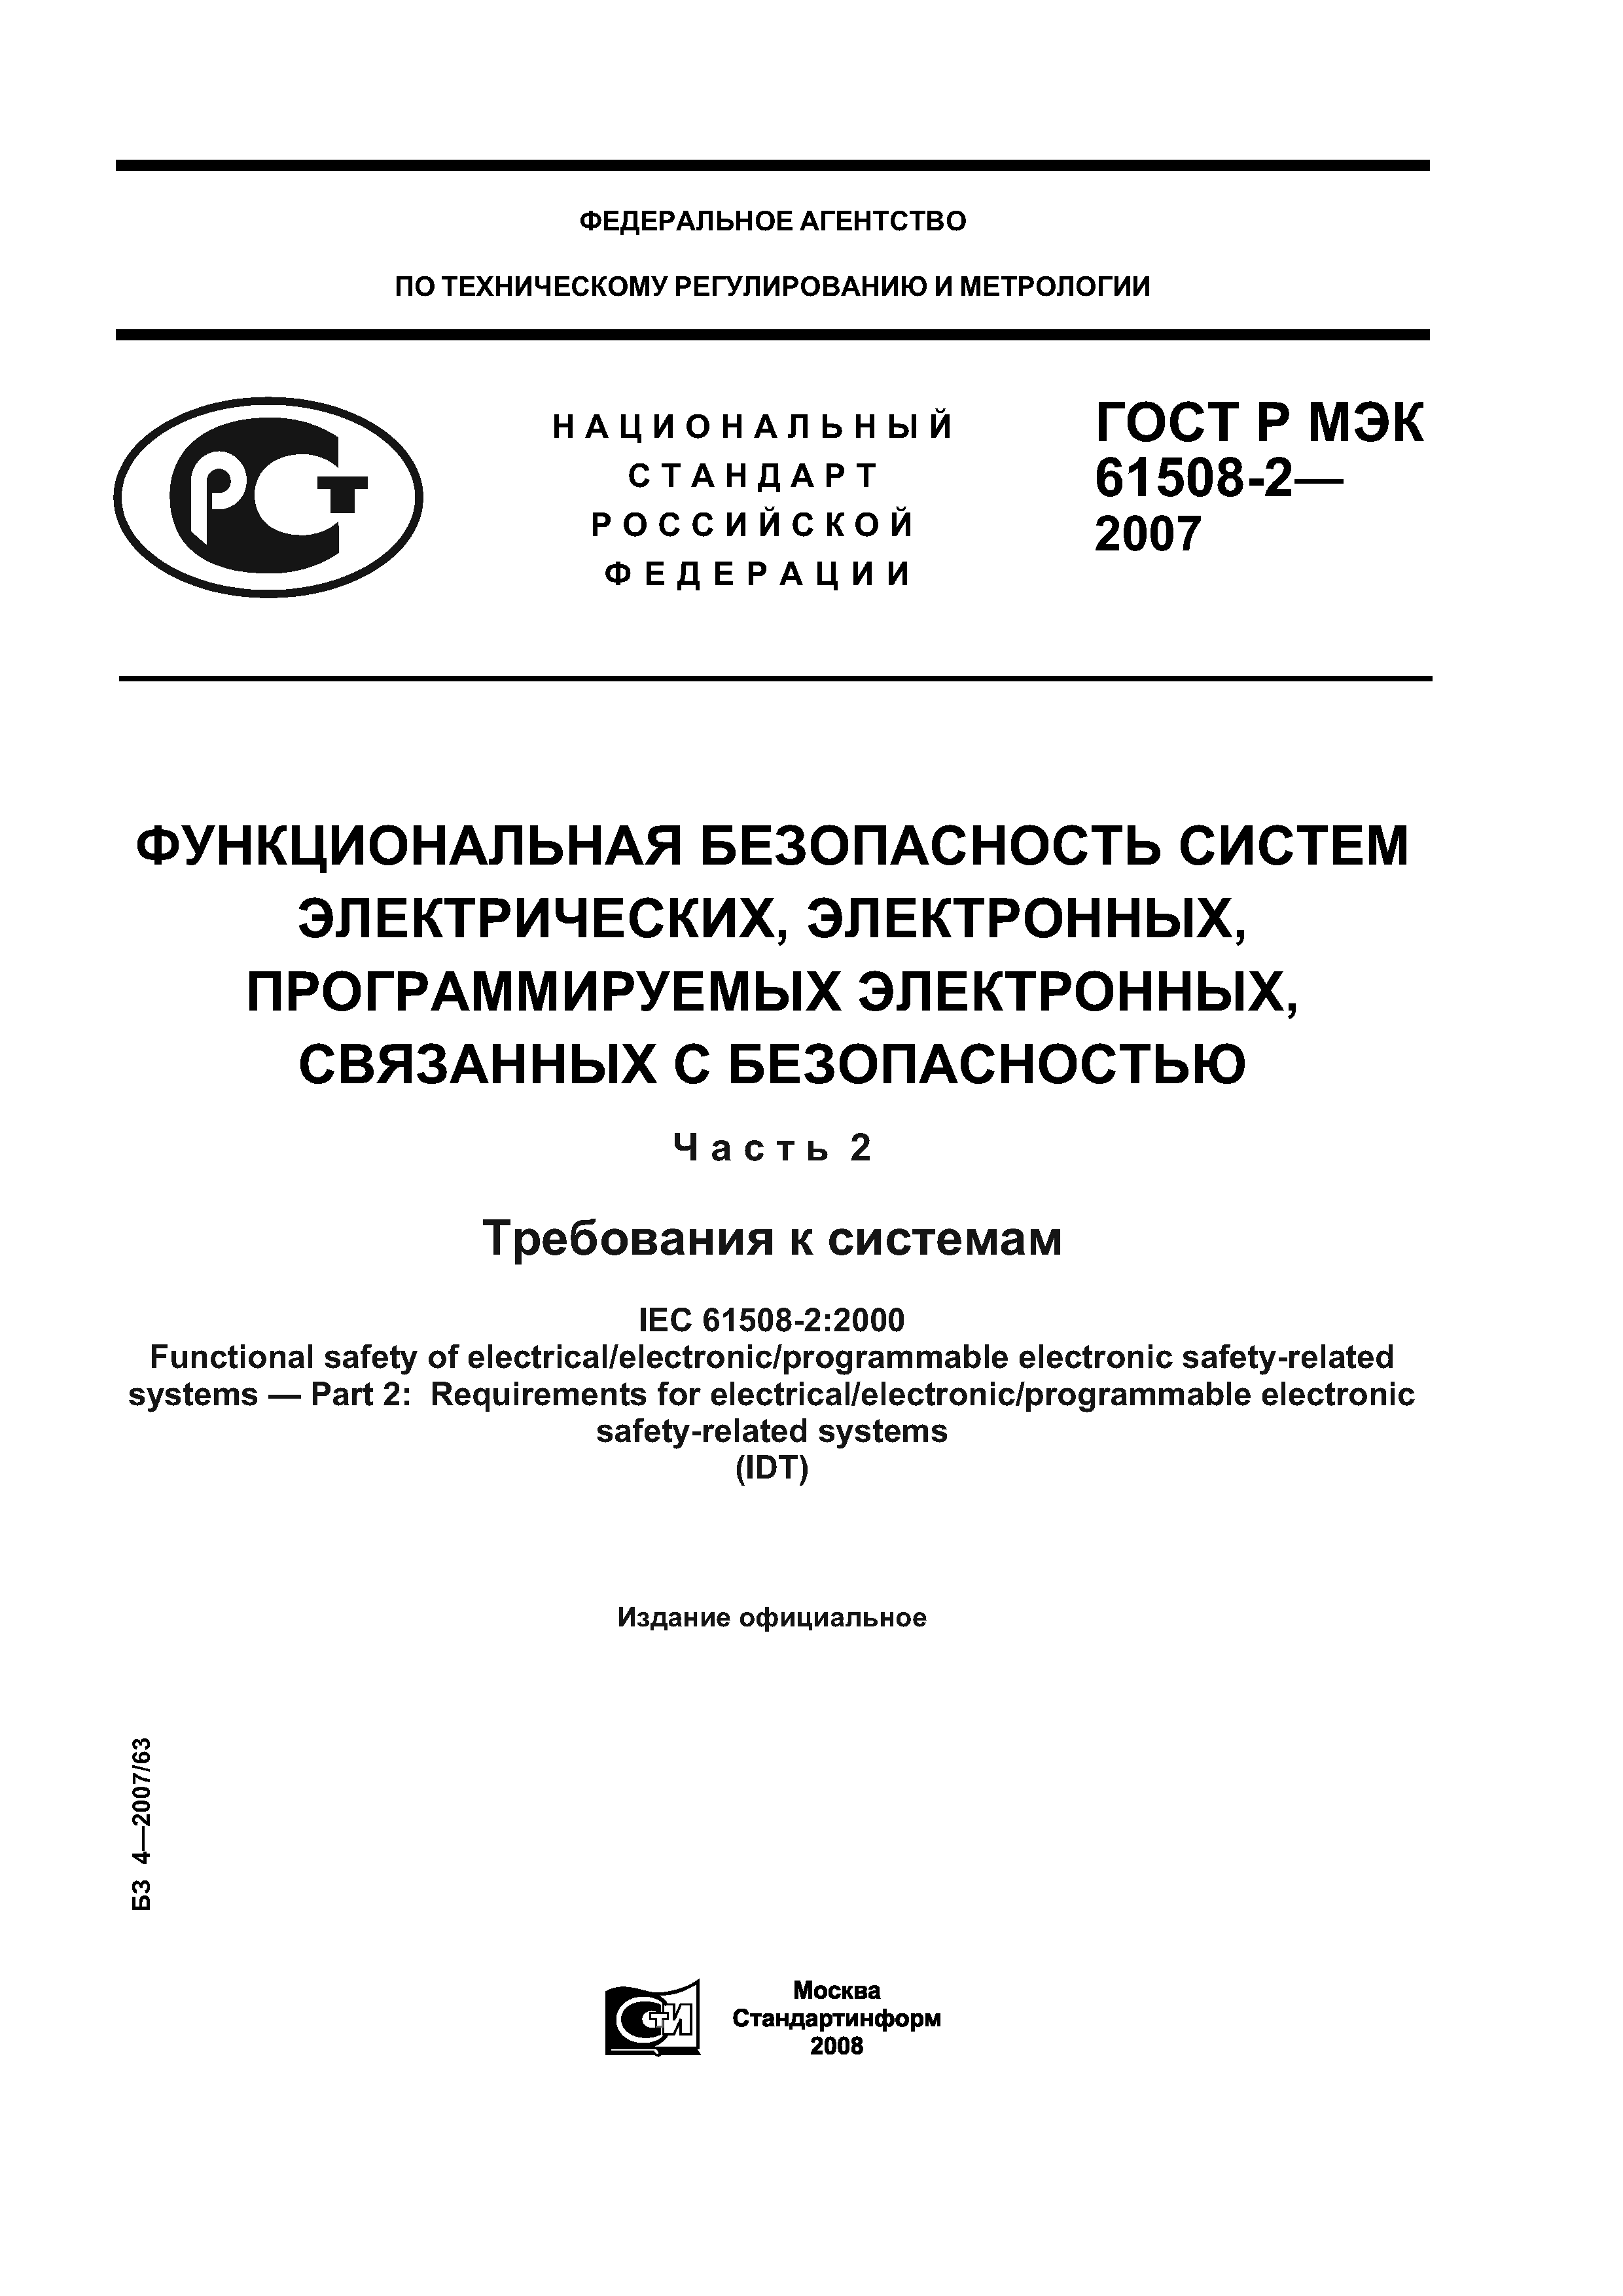 ГОСТ Р МЭК 61508-2-2007